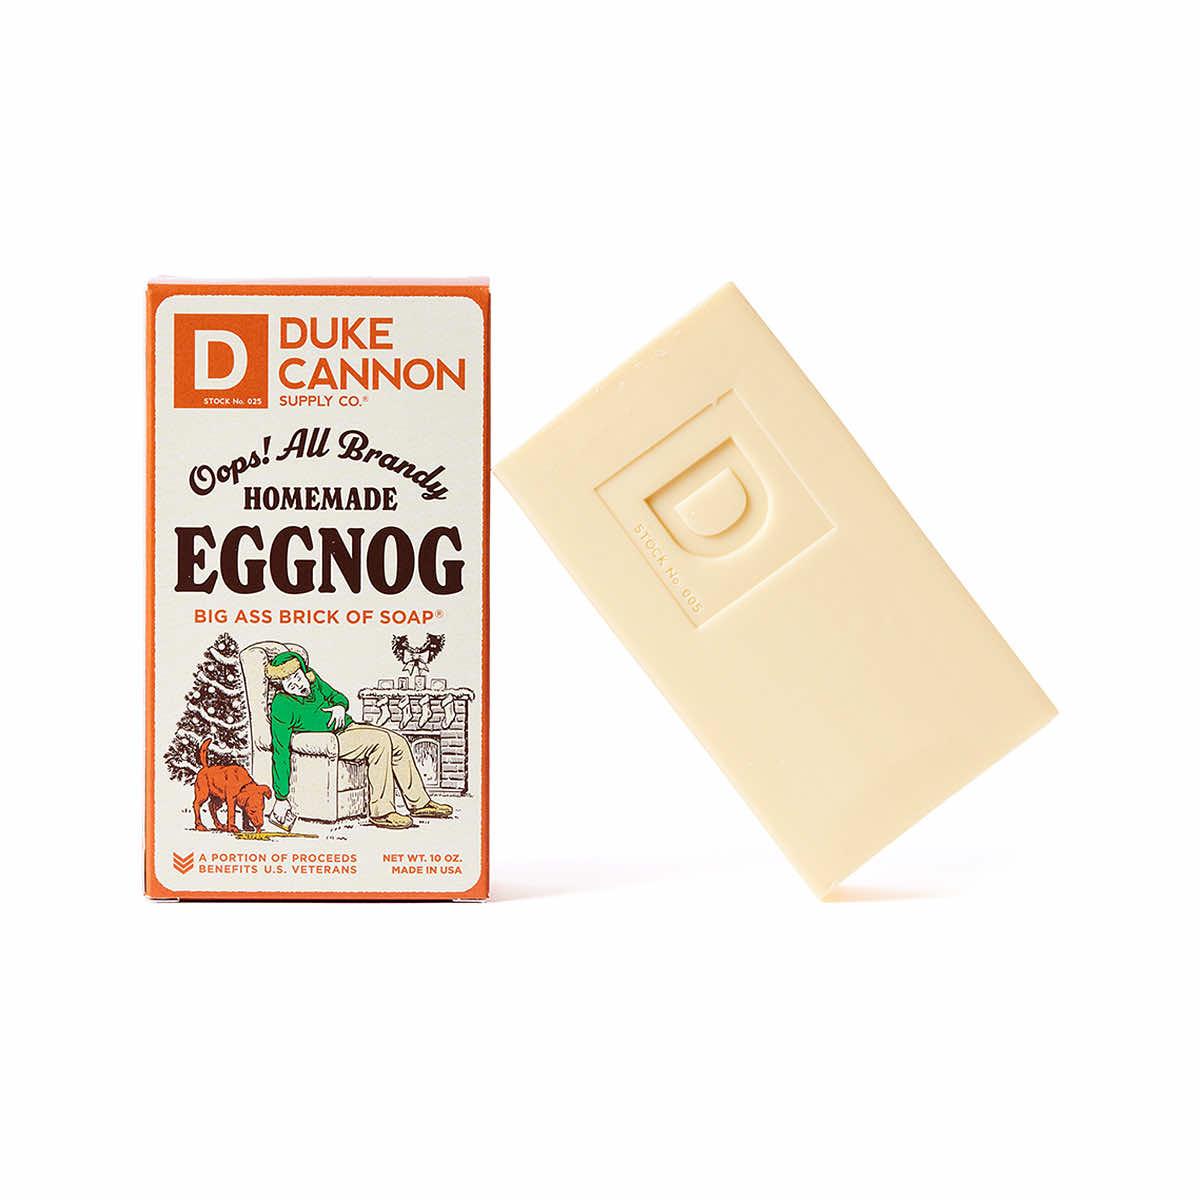  Homemade Eggnog Soap